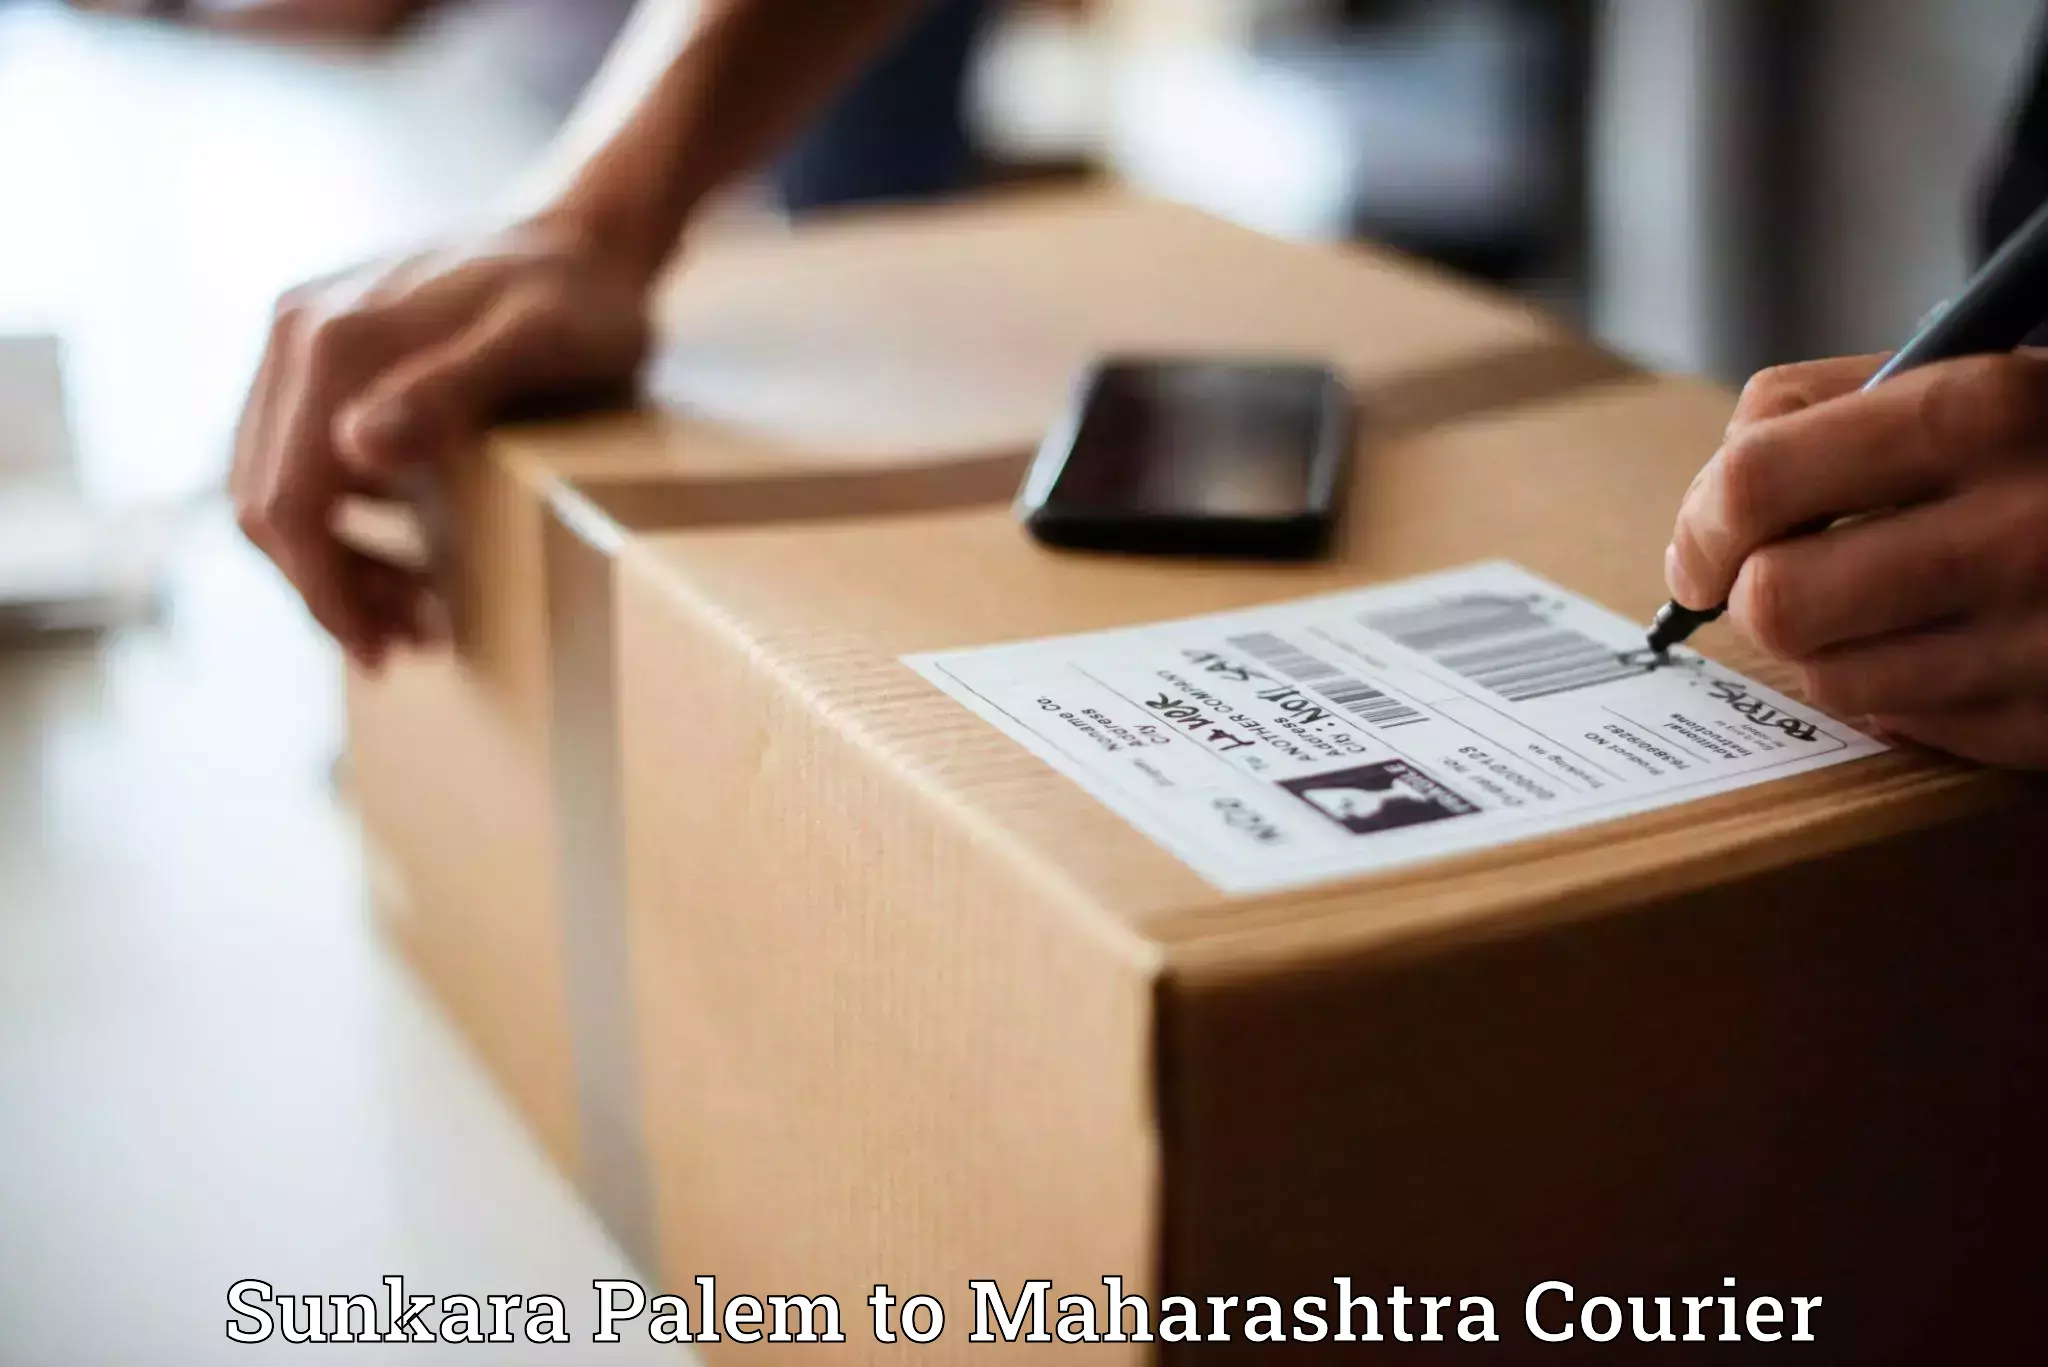 24-hour courier services Sunkara Palem to Maharashtra